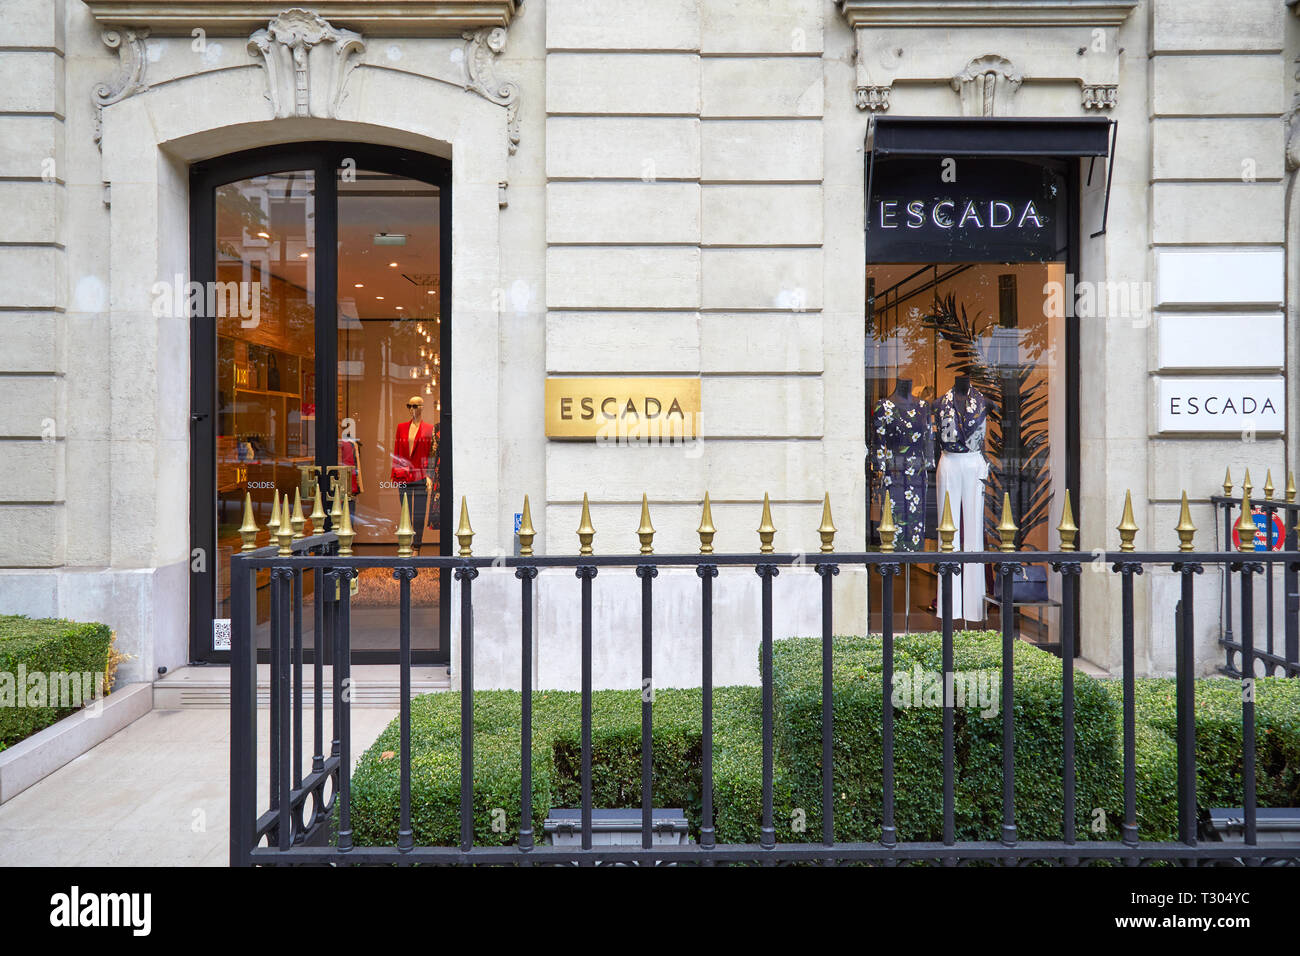 PARIS, FRANCE - JULY 22, 2017: Escada fashion luxury store in